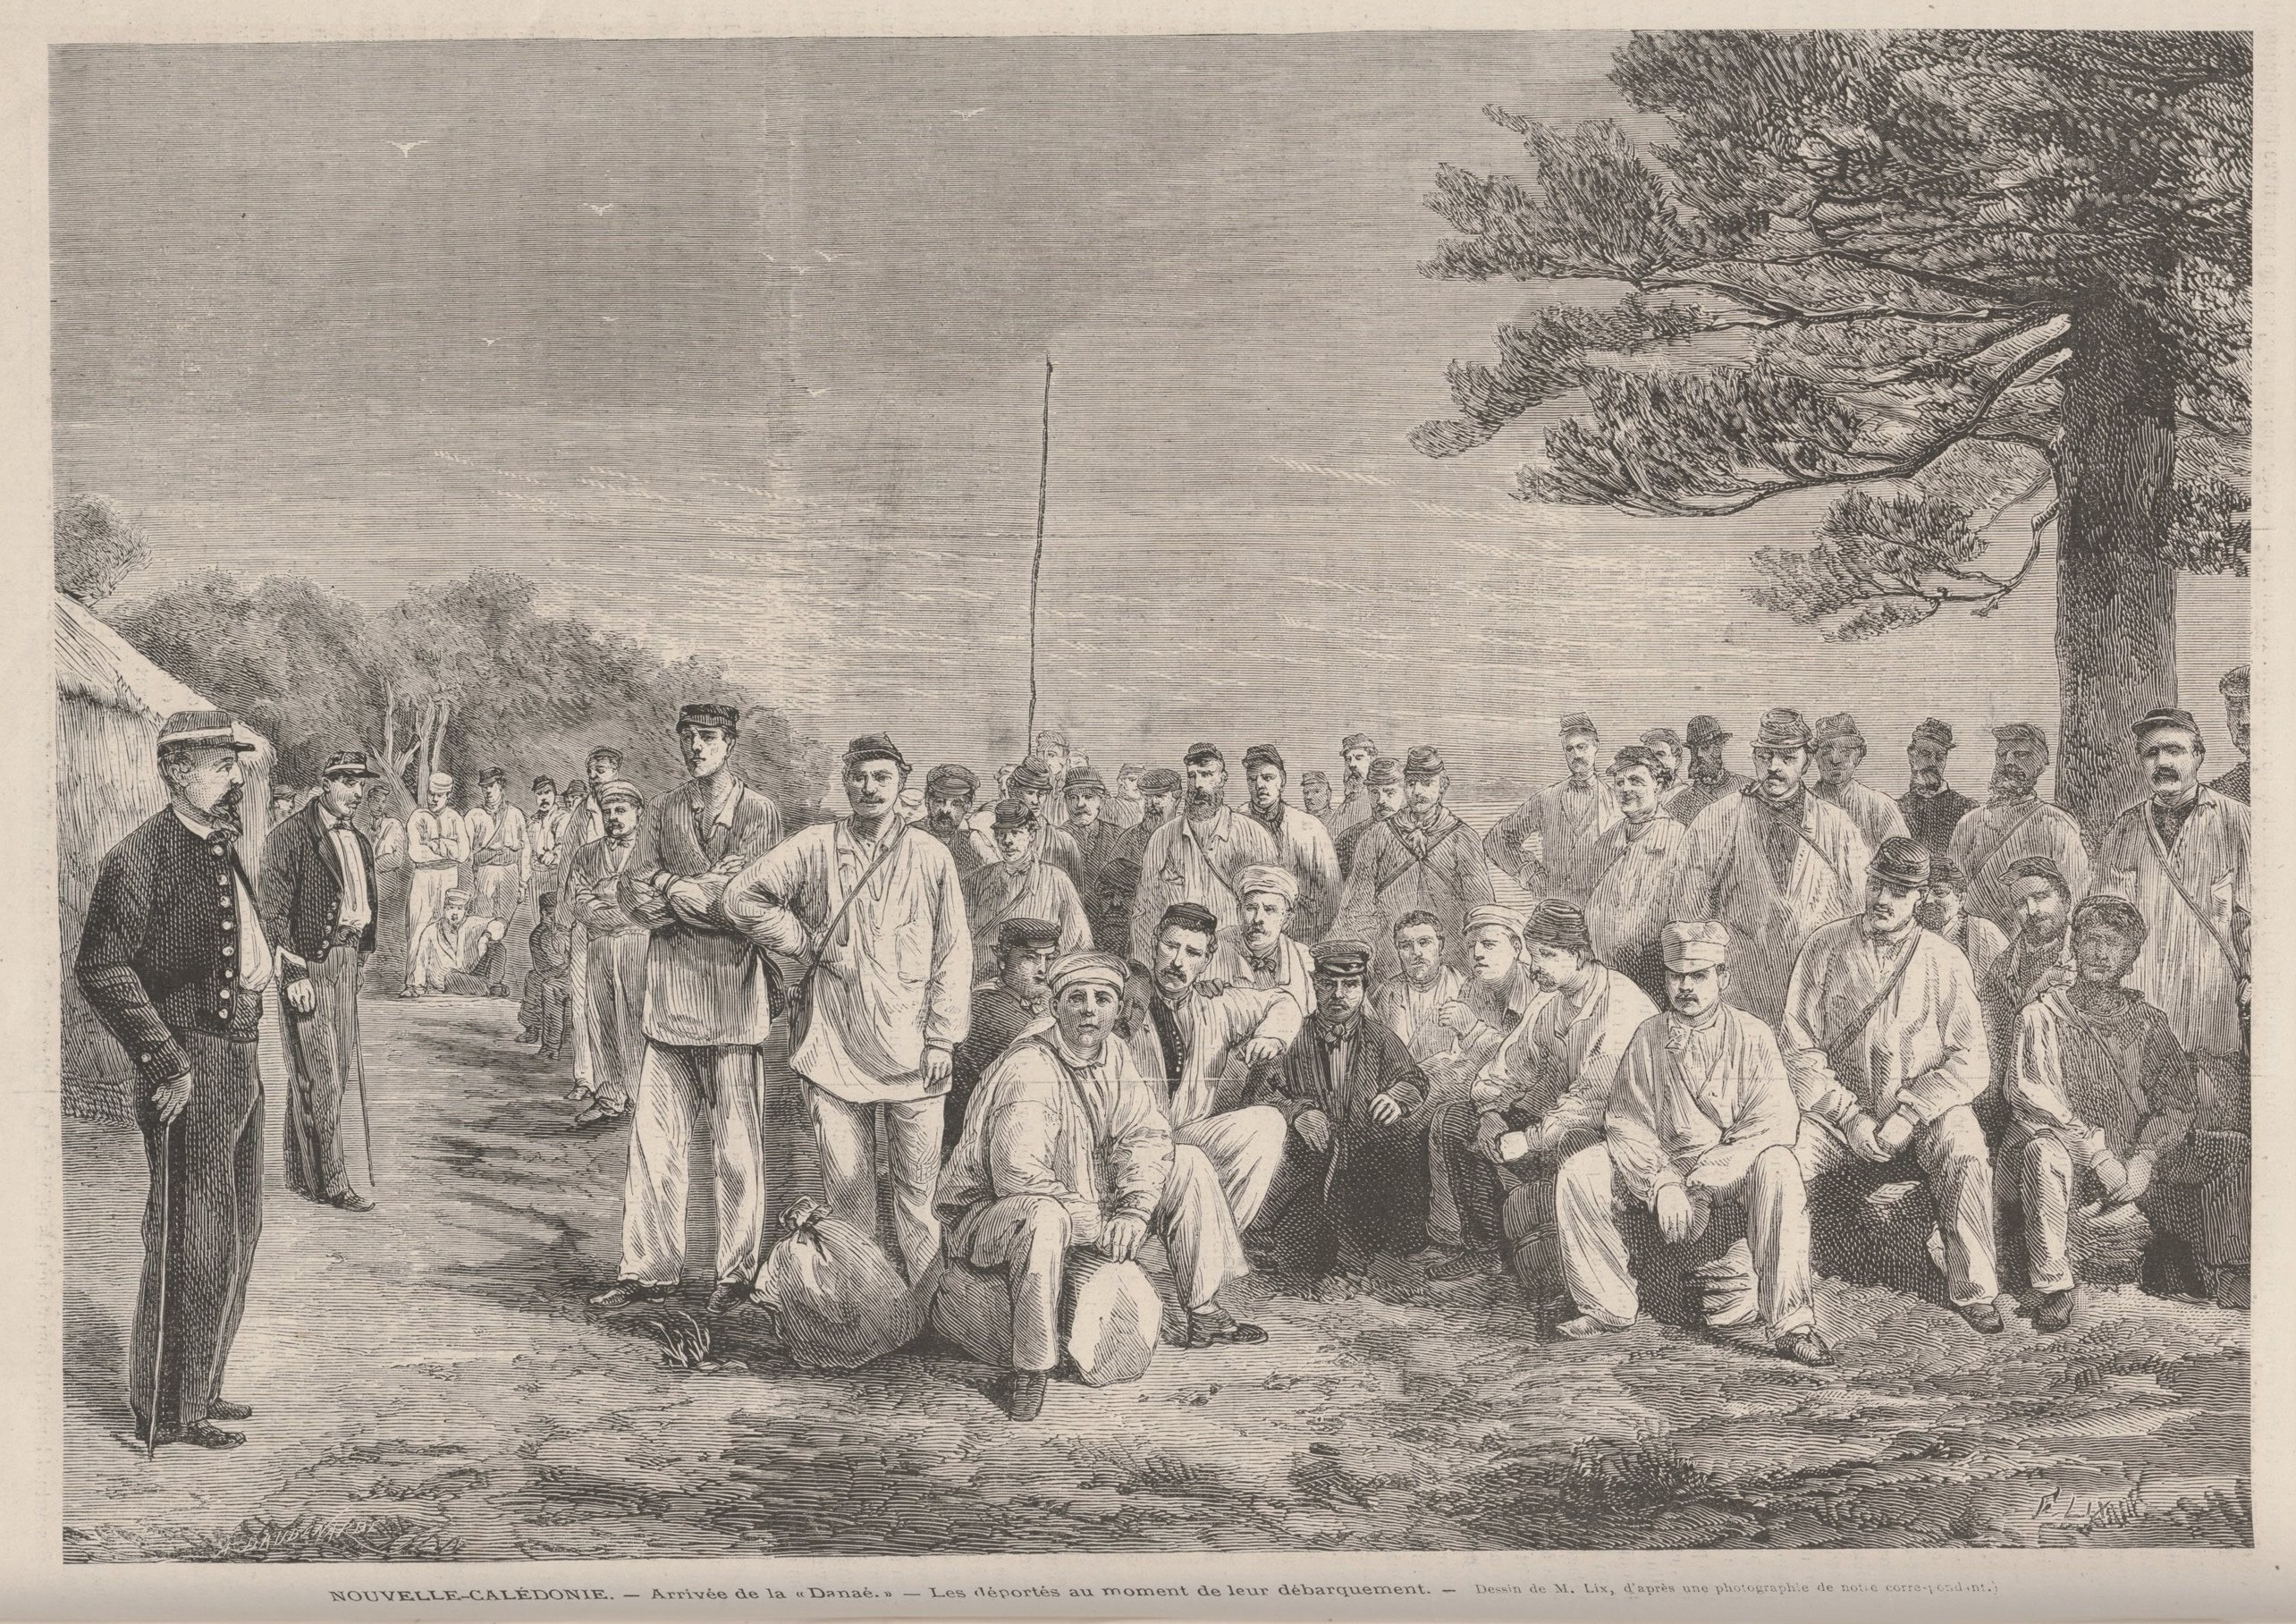 Arrivée de la Danaé en Nouvelle-Calédonie - Les déportés au moment de leur débarquement  - Dessin de M. Lix (Le Monde Illustré du 8 février 1873)